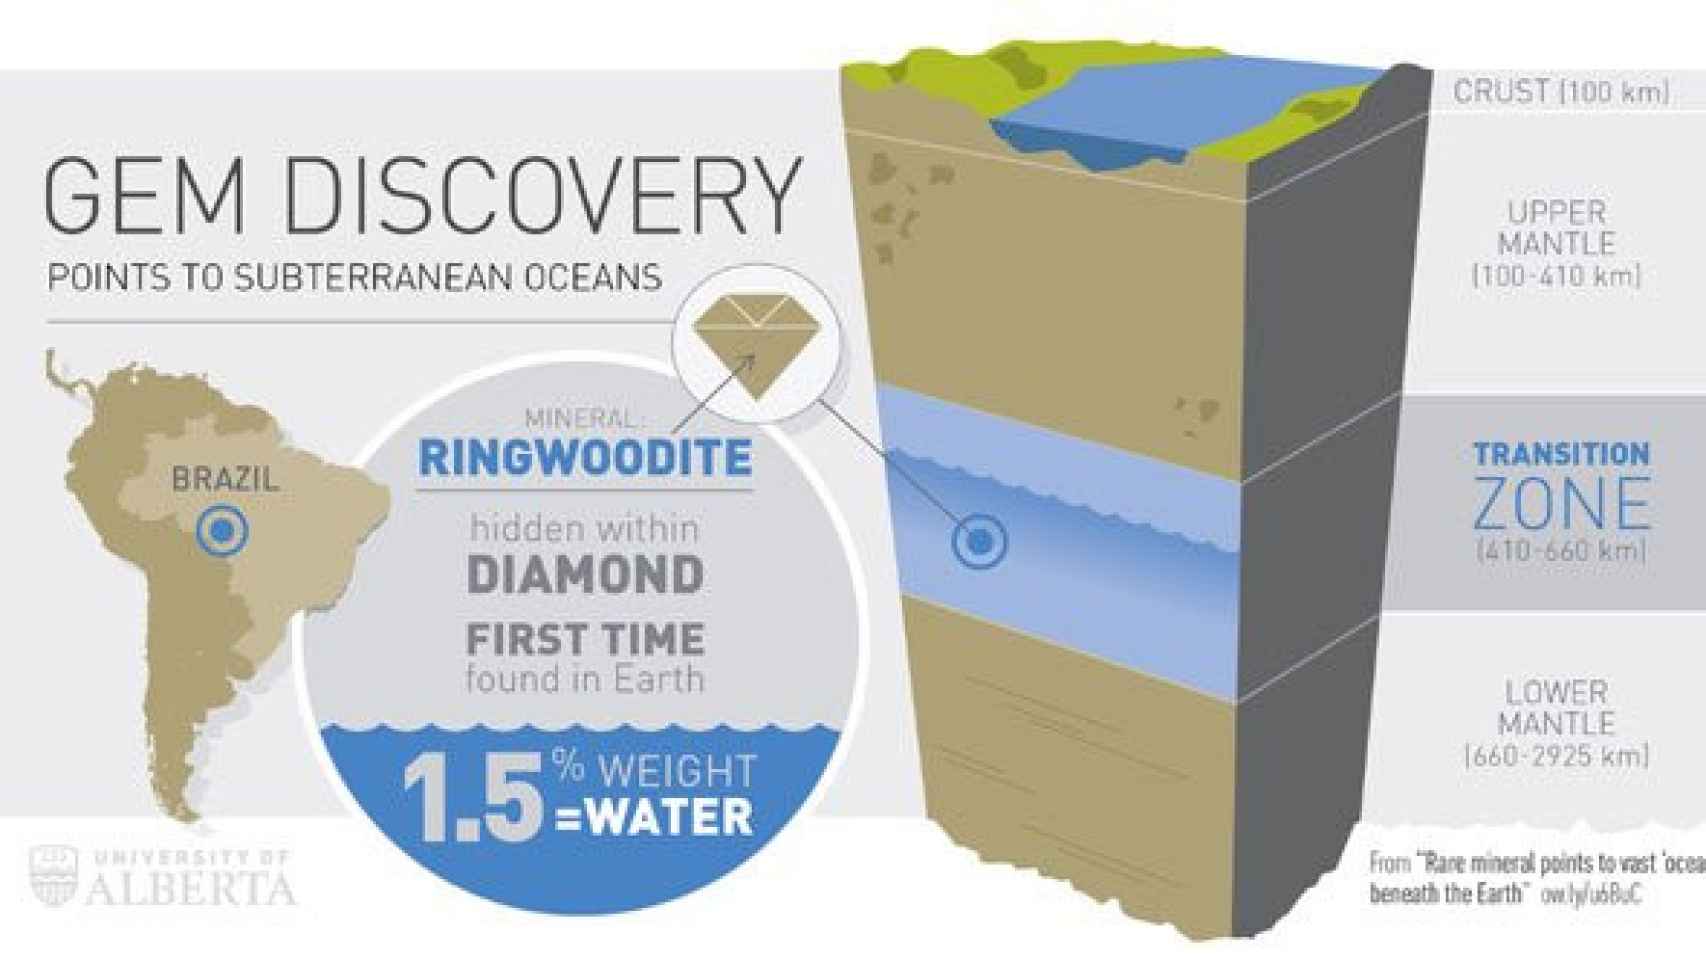 El primer descubrimiento terrestre de ringwoodite por la Universidad de Alberta confirma la presencia de grandes cantidades de agua entre 400 y 700 km bajo la superficie de la Tierra.